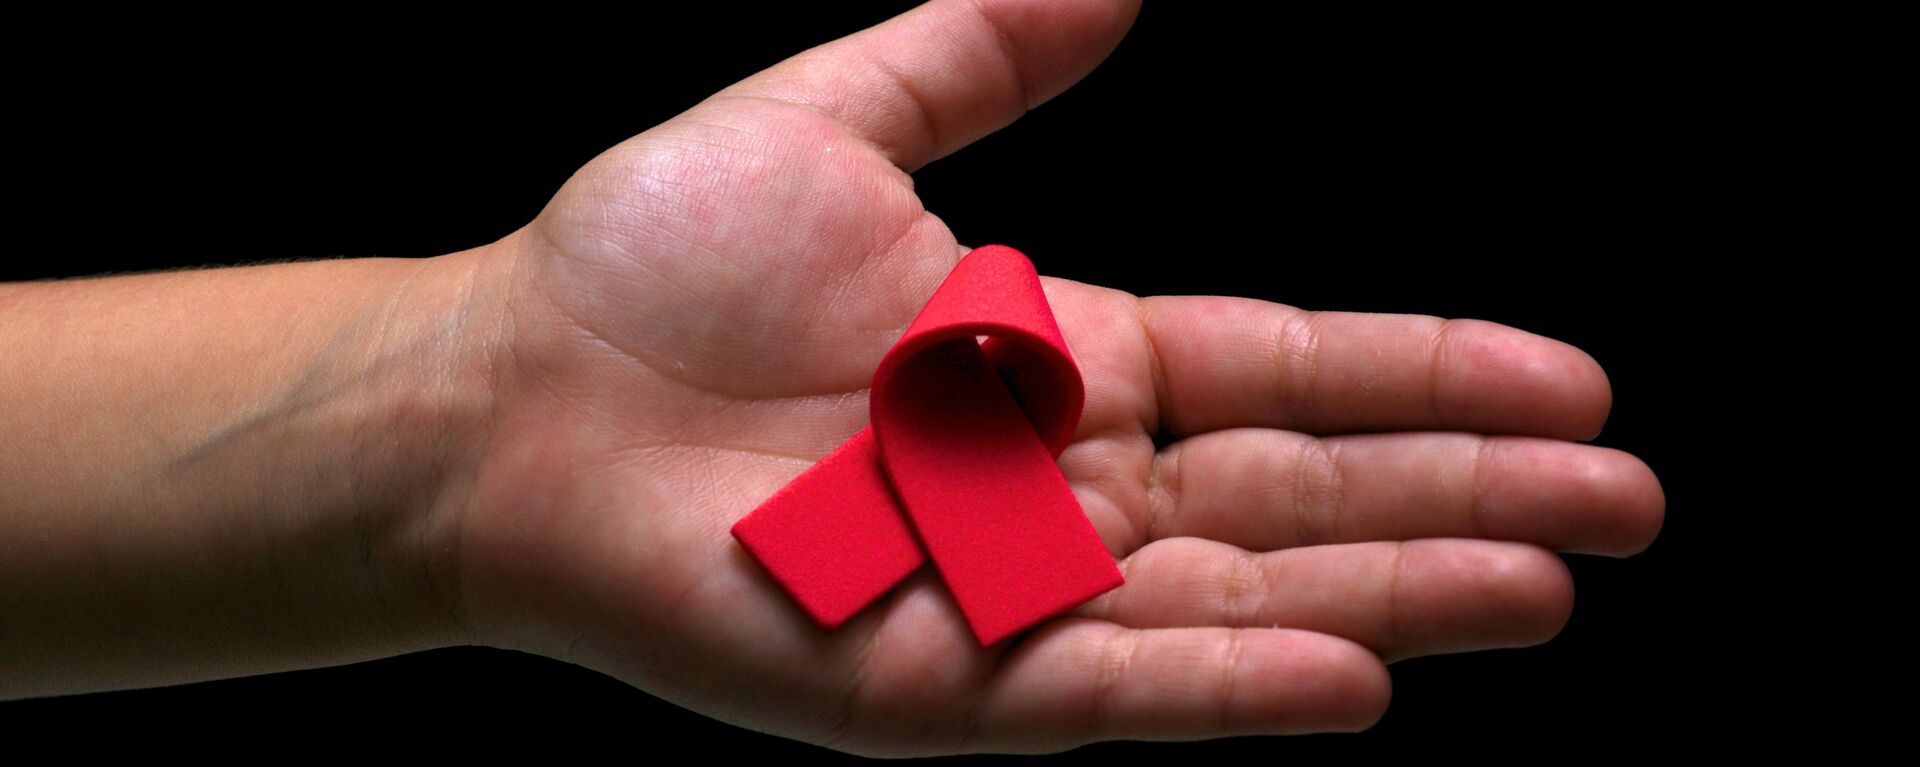 El lazo rojo, símbolo de la lucha contra el VIH y el SIDA  - Sputnik Mundo, 1920, 02.12.2020